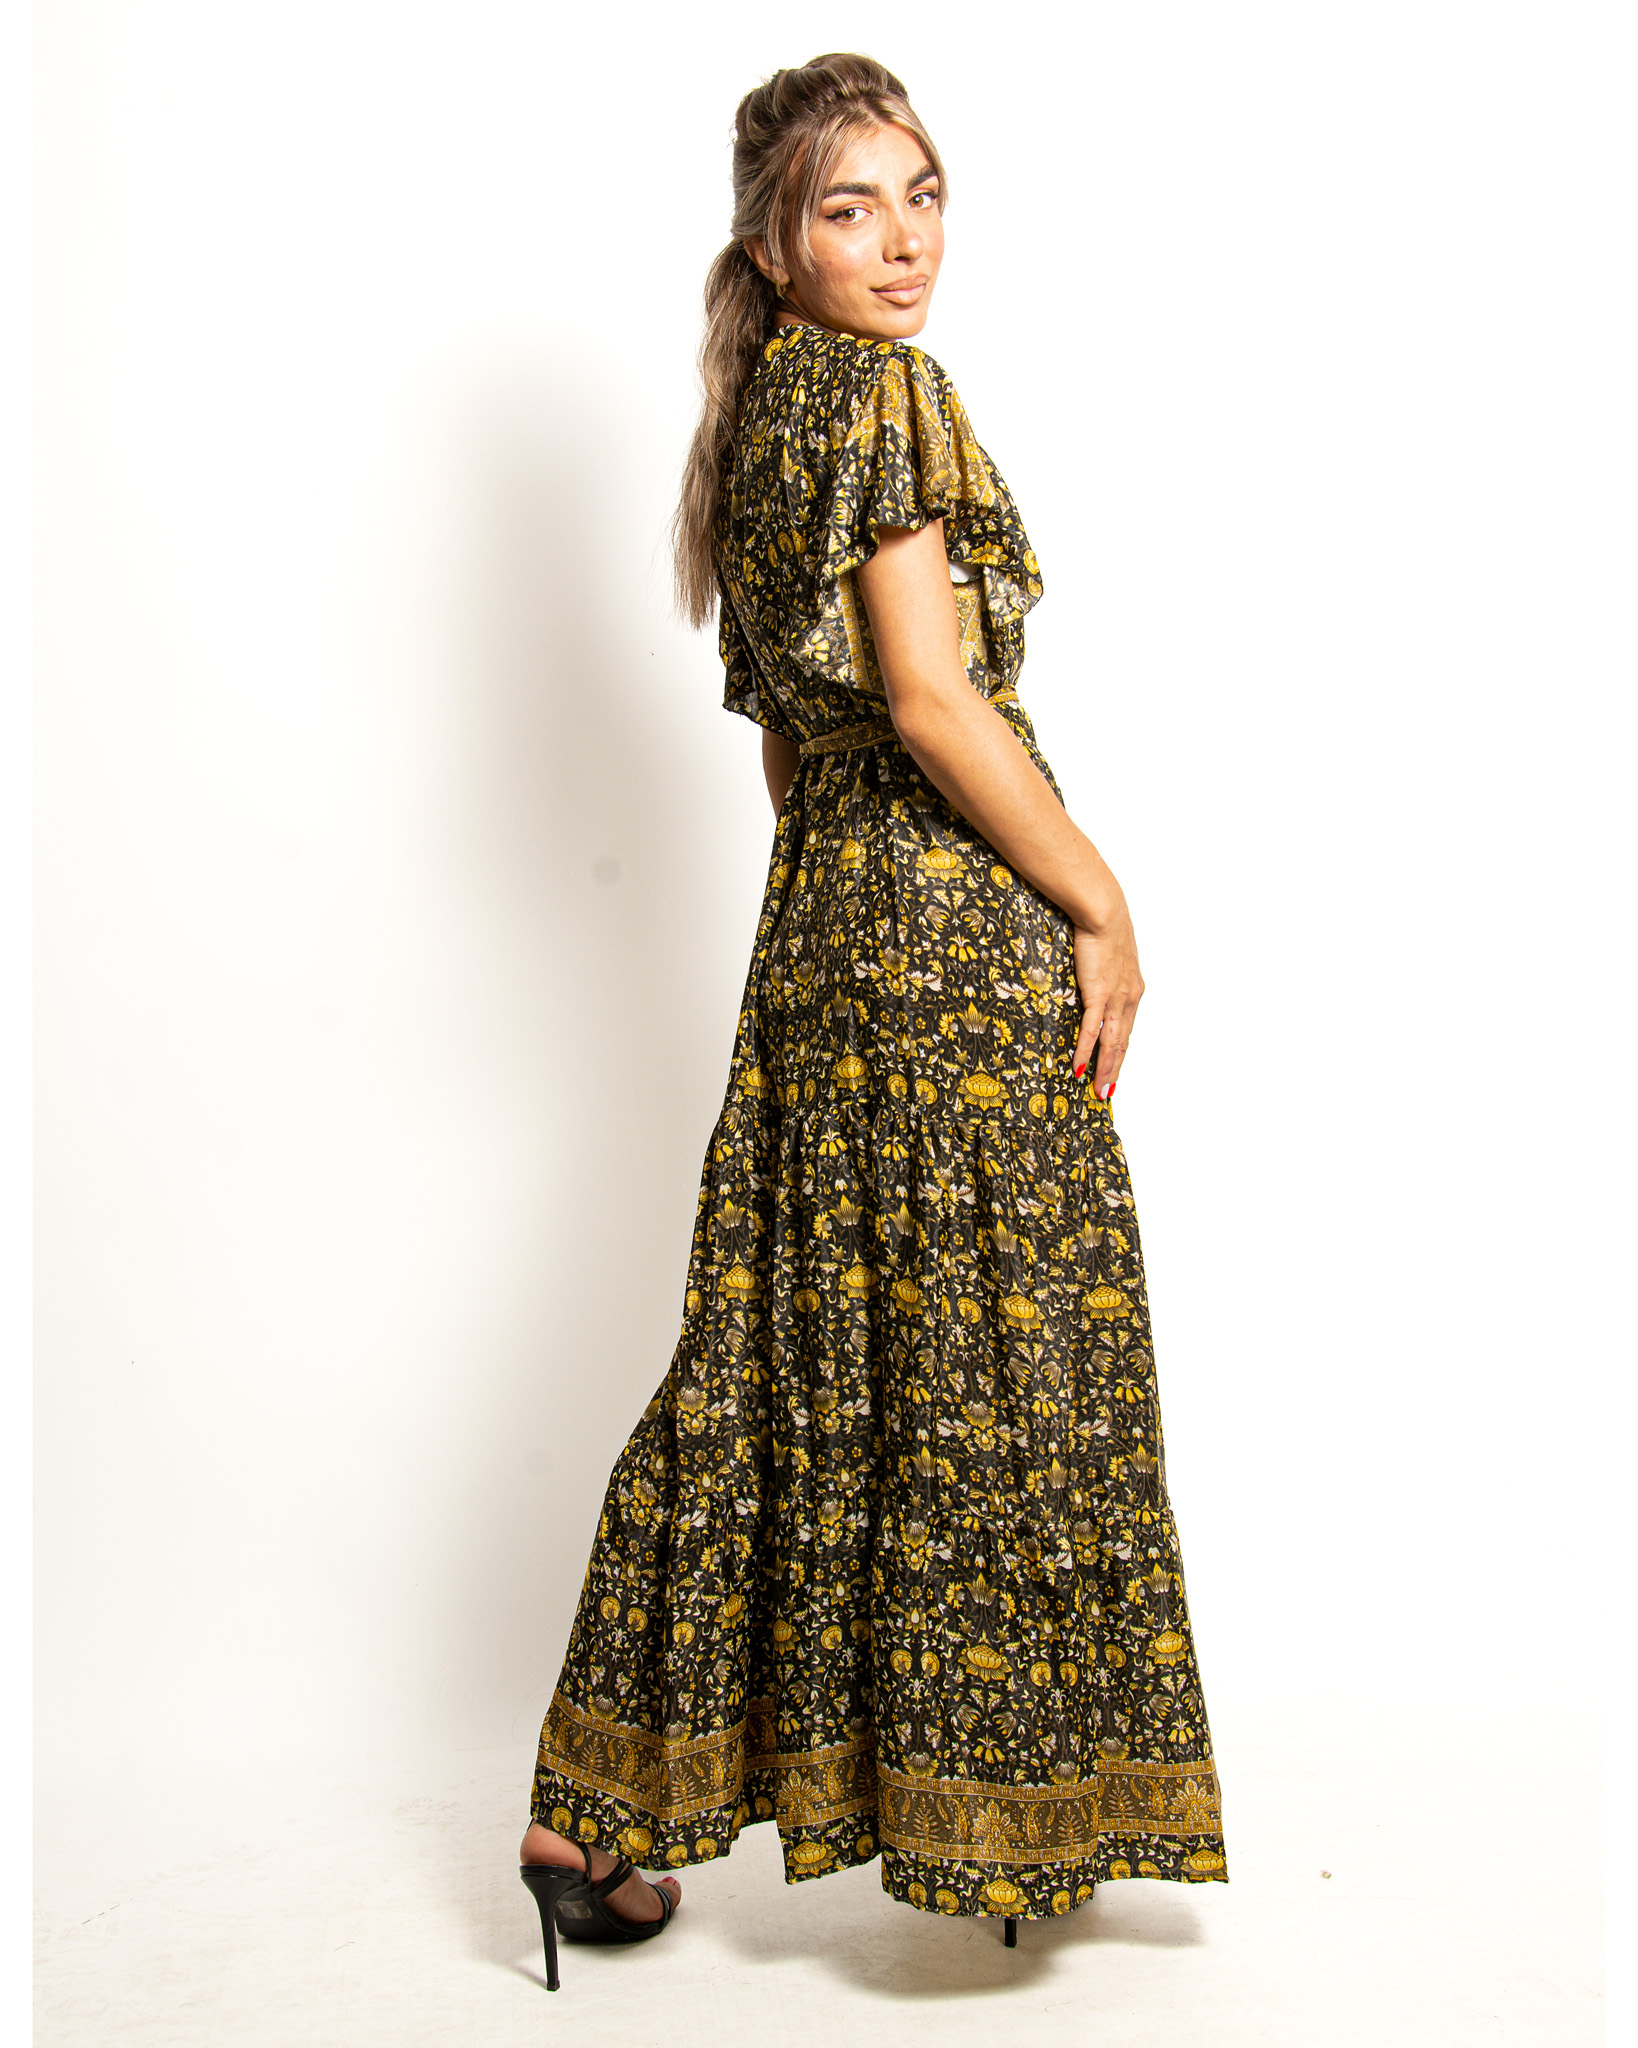 Φόρεμα Κρουαζέ Δετό Μάυρο-Χρυσό – EllenBoutique